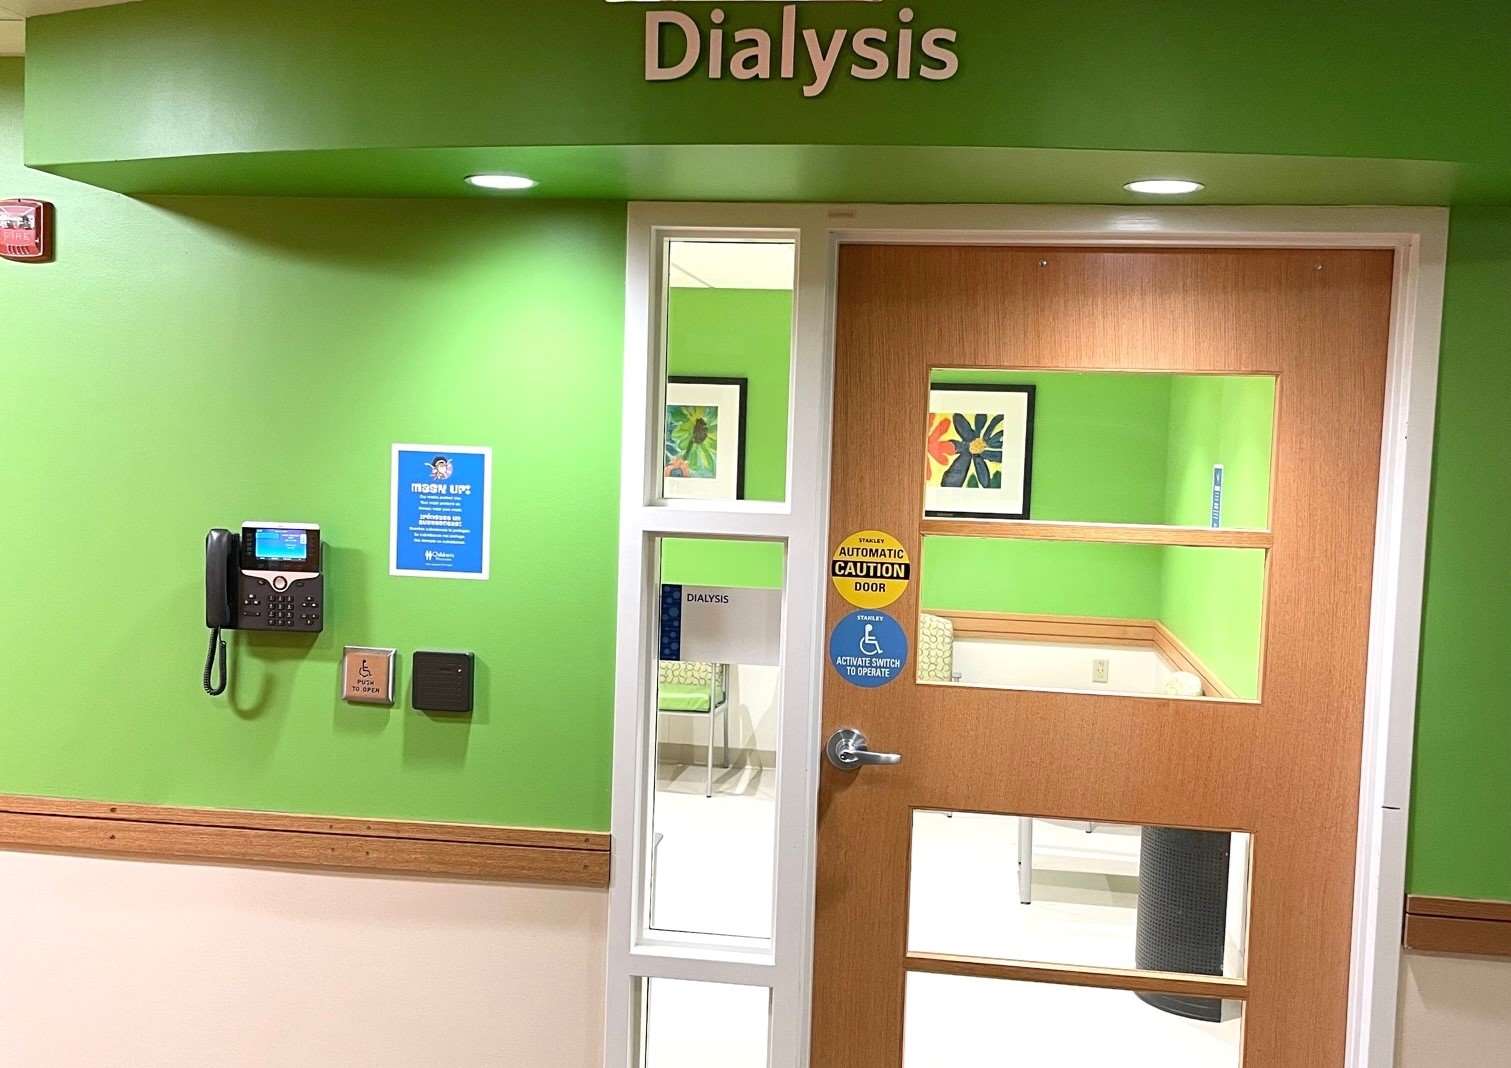 10 dialysis door